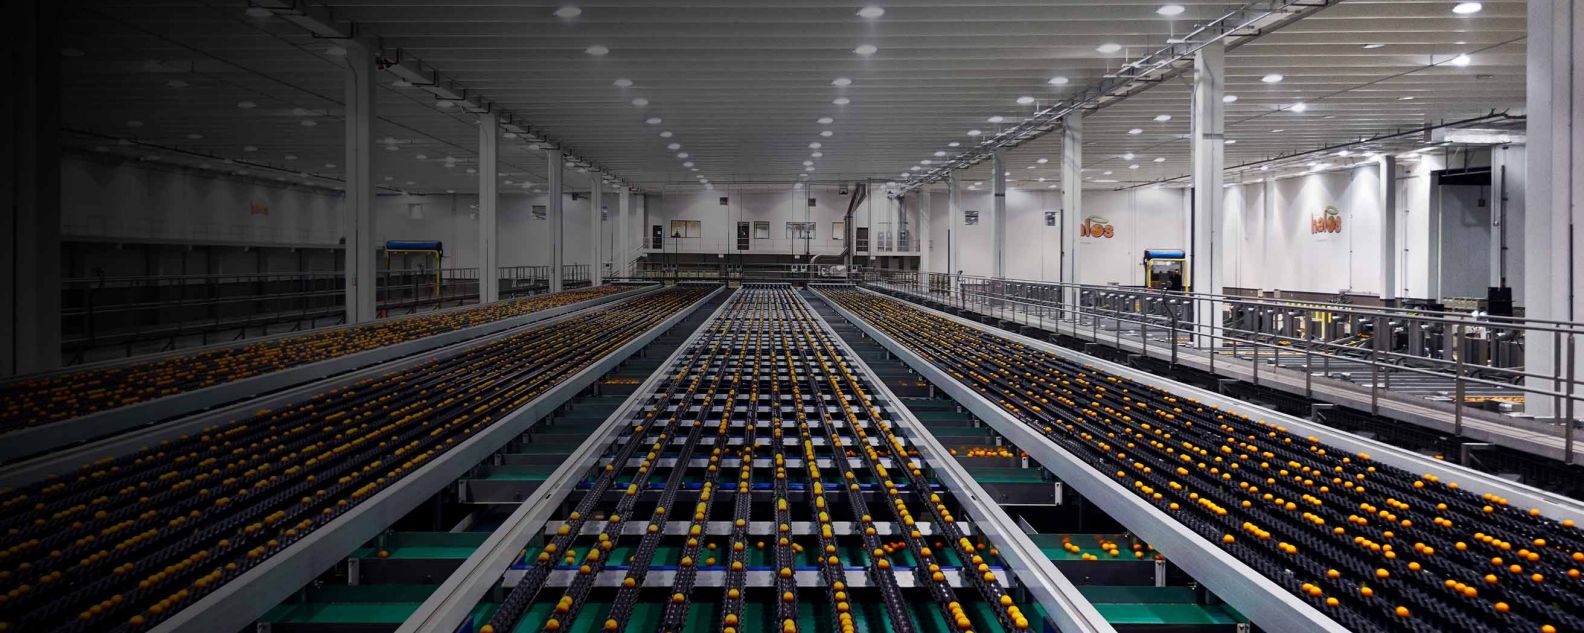 an orange fruit processing warehouse